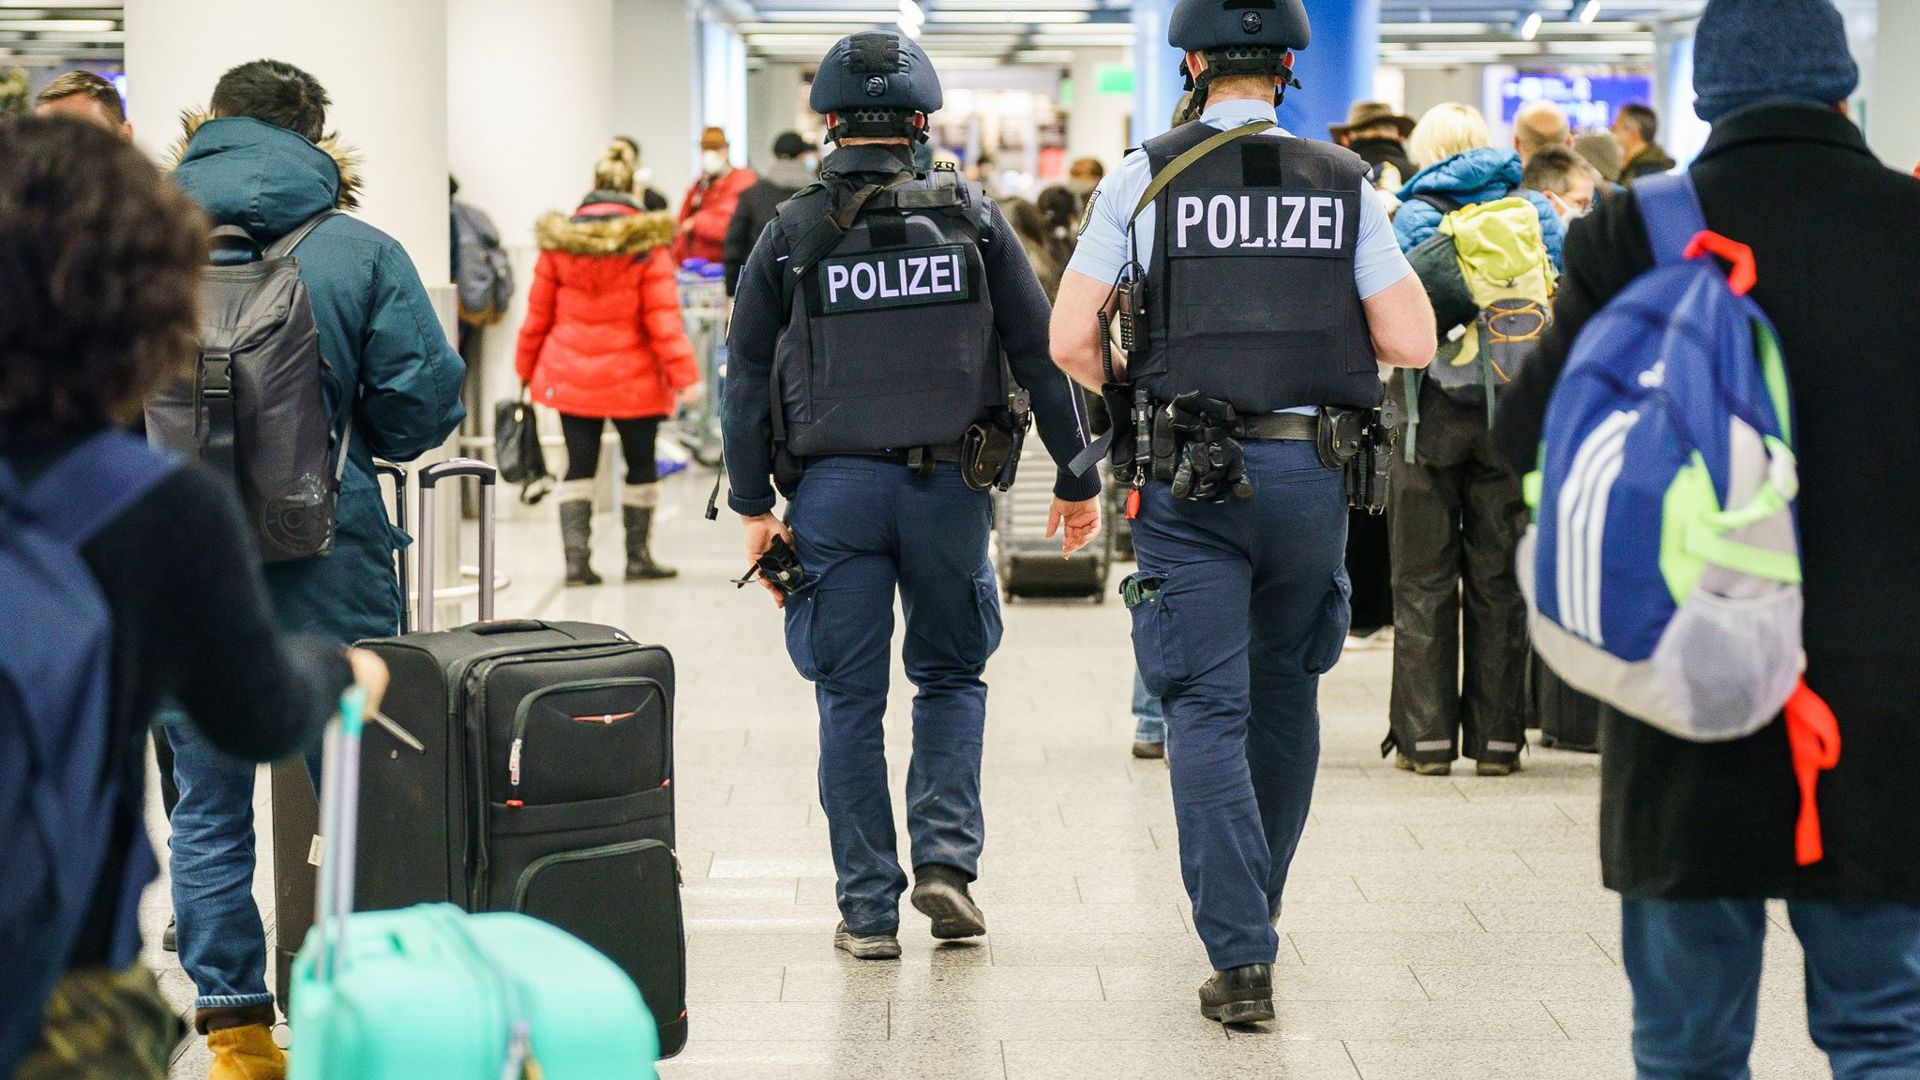 Polizisten patrouillieren durch das Terminal 1 im Flughafen Frankfurt.